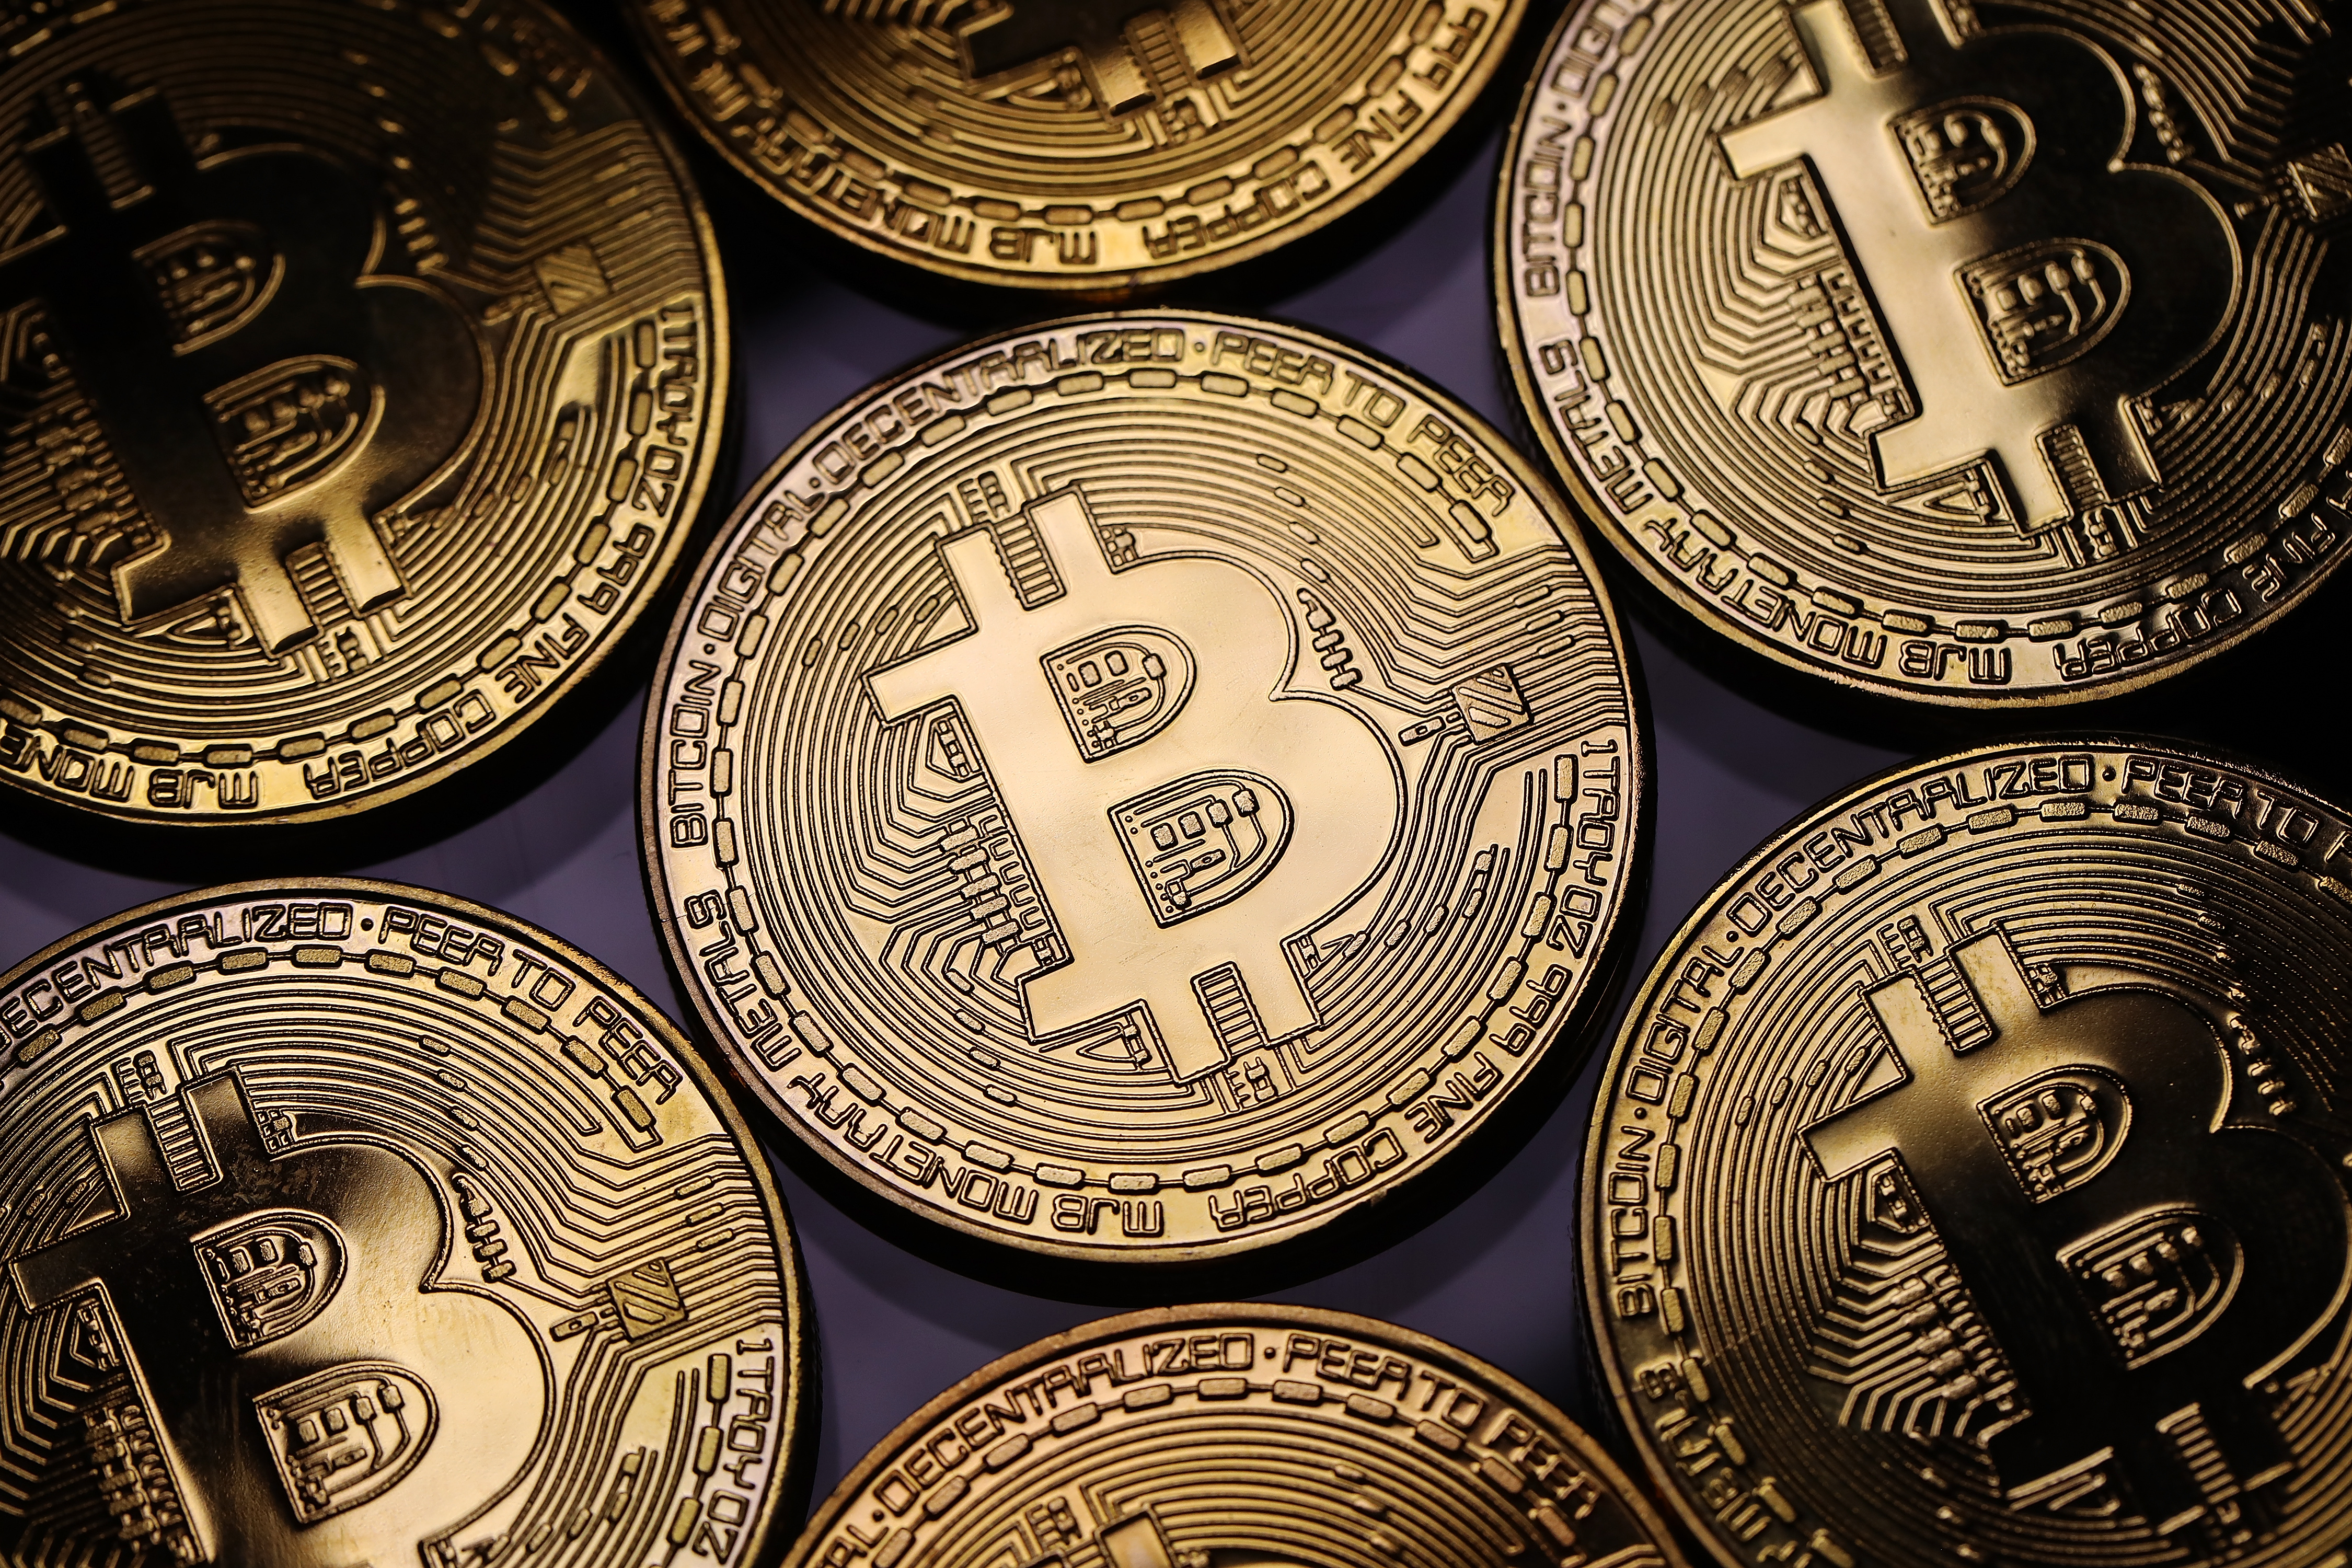 Prekybos bitkoinais pradedantiesiems uk. Bitcoin ar Ethereum – į kurią kriptovaliutą investuoti?